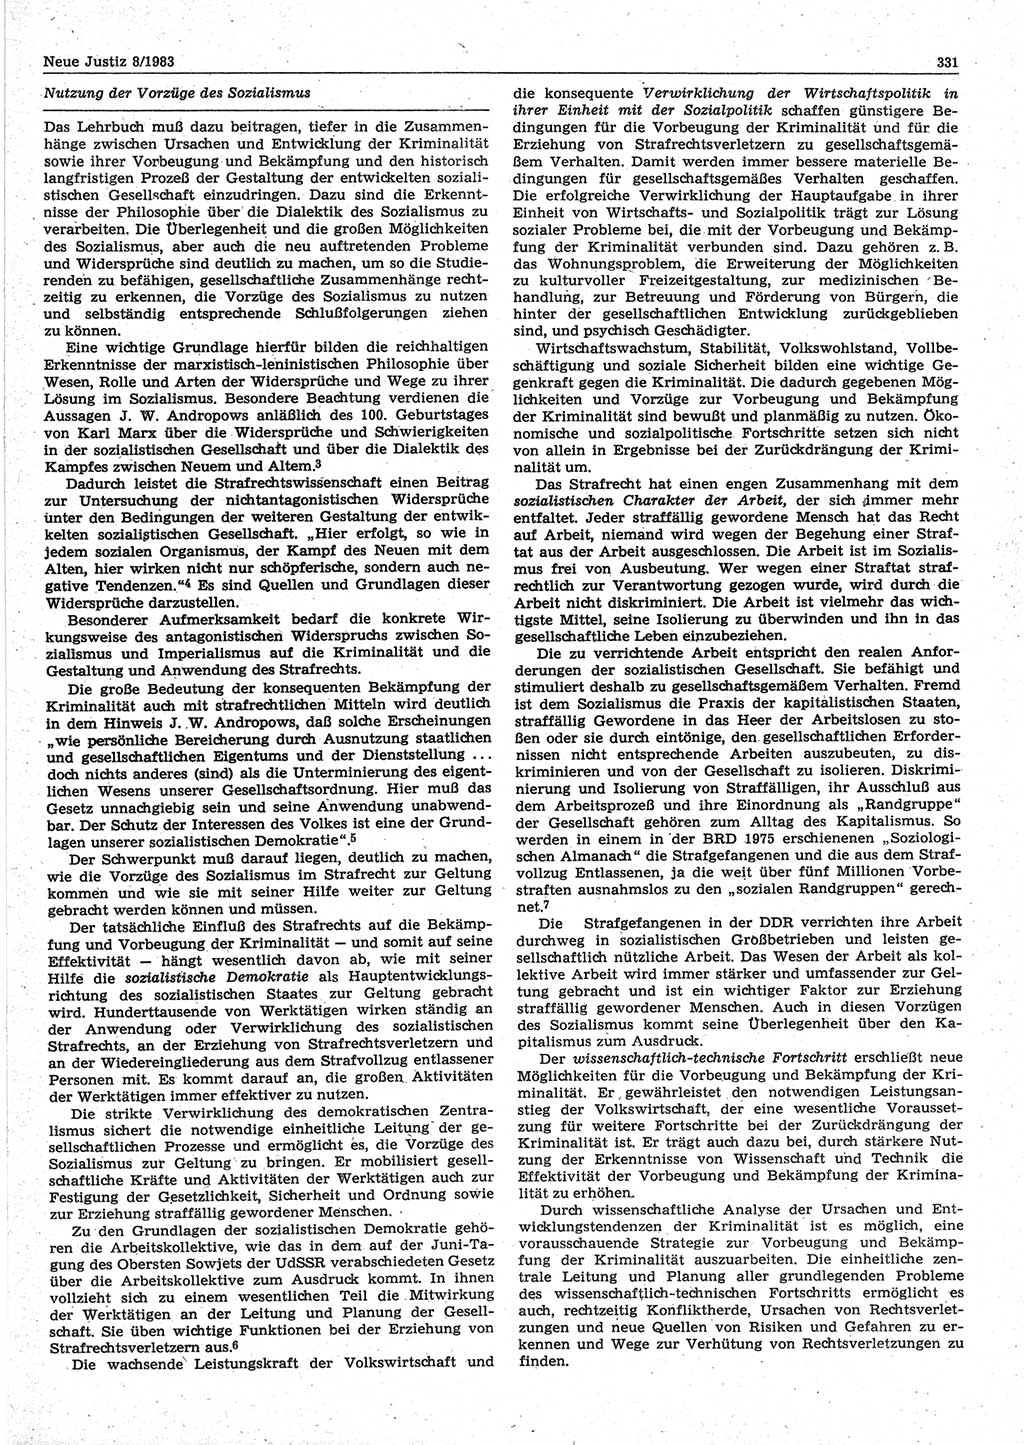 Neue Justiz (NJ), Zeitschrift für sozialistisches Recht und Gesetzlichkeit [Deutsche Demokratische Republik (DDR)], 37. Jahrgang 1983, Seite 331 (NJ DDR 1983, S. 331)